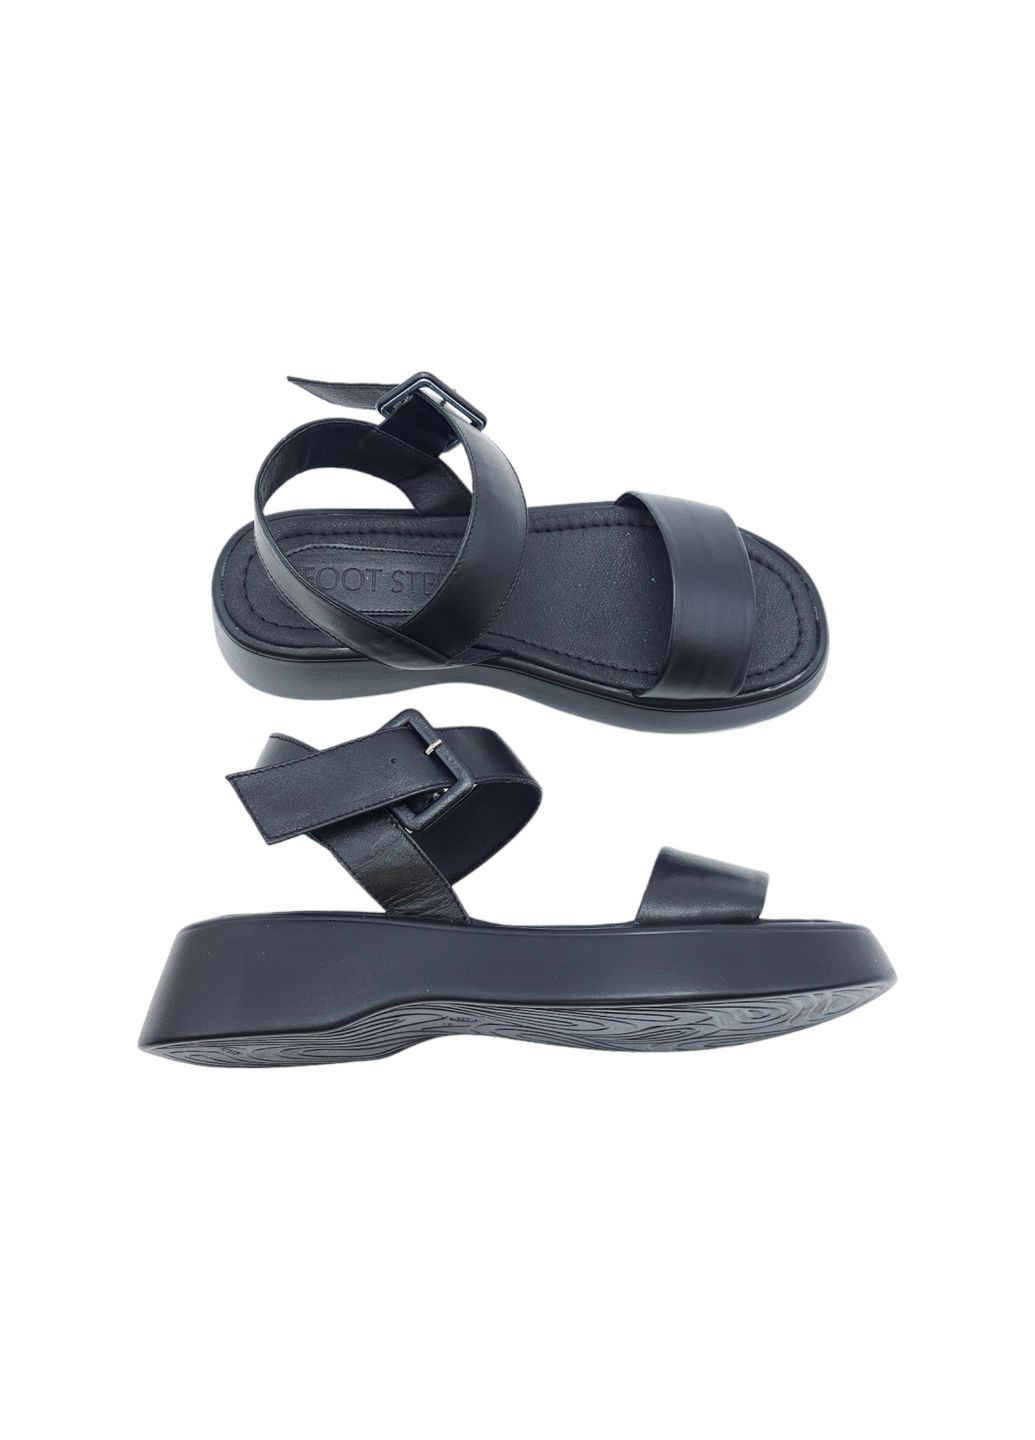 Черные женские босоножки черные кожаные fs-18-19 23,5 см (р) Foot Step